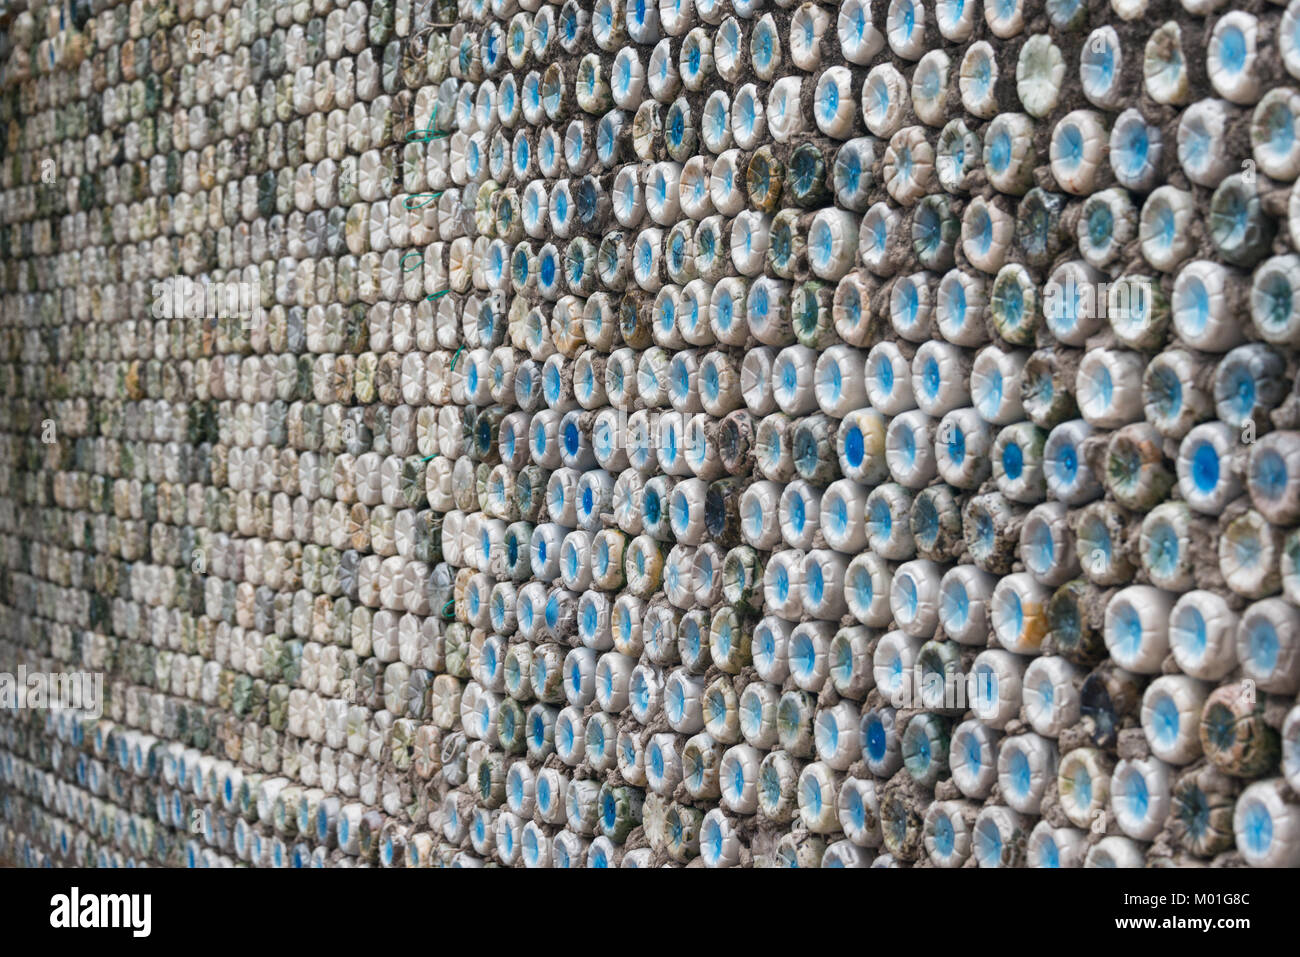 Flasche recycling: Plastikflaschen, die in Beton gesetzt wurden, eine Flasche an der Wand zu bilden Stockfoto